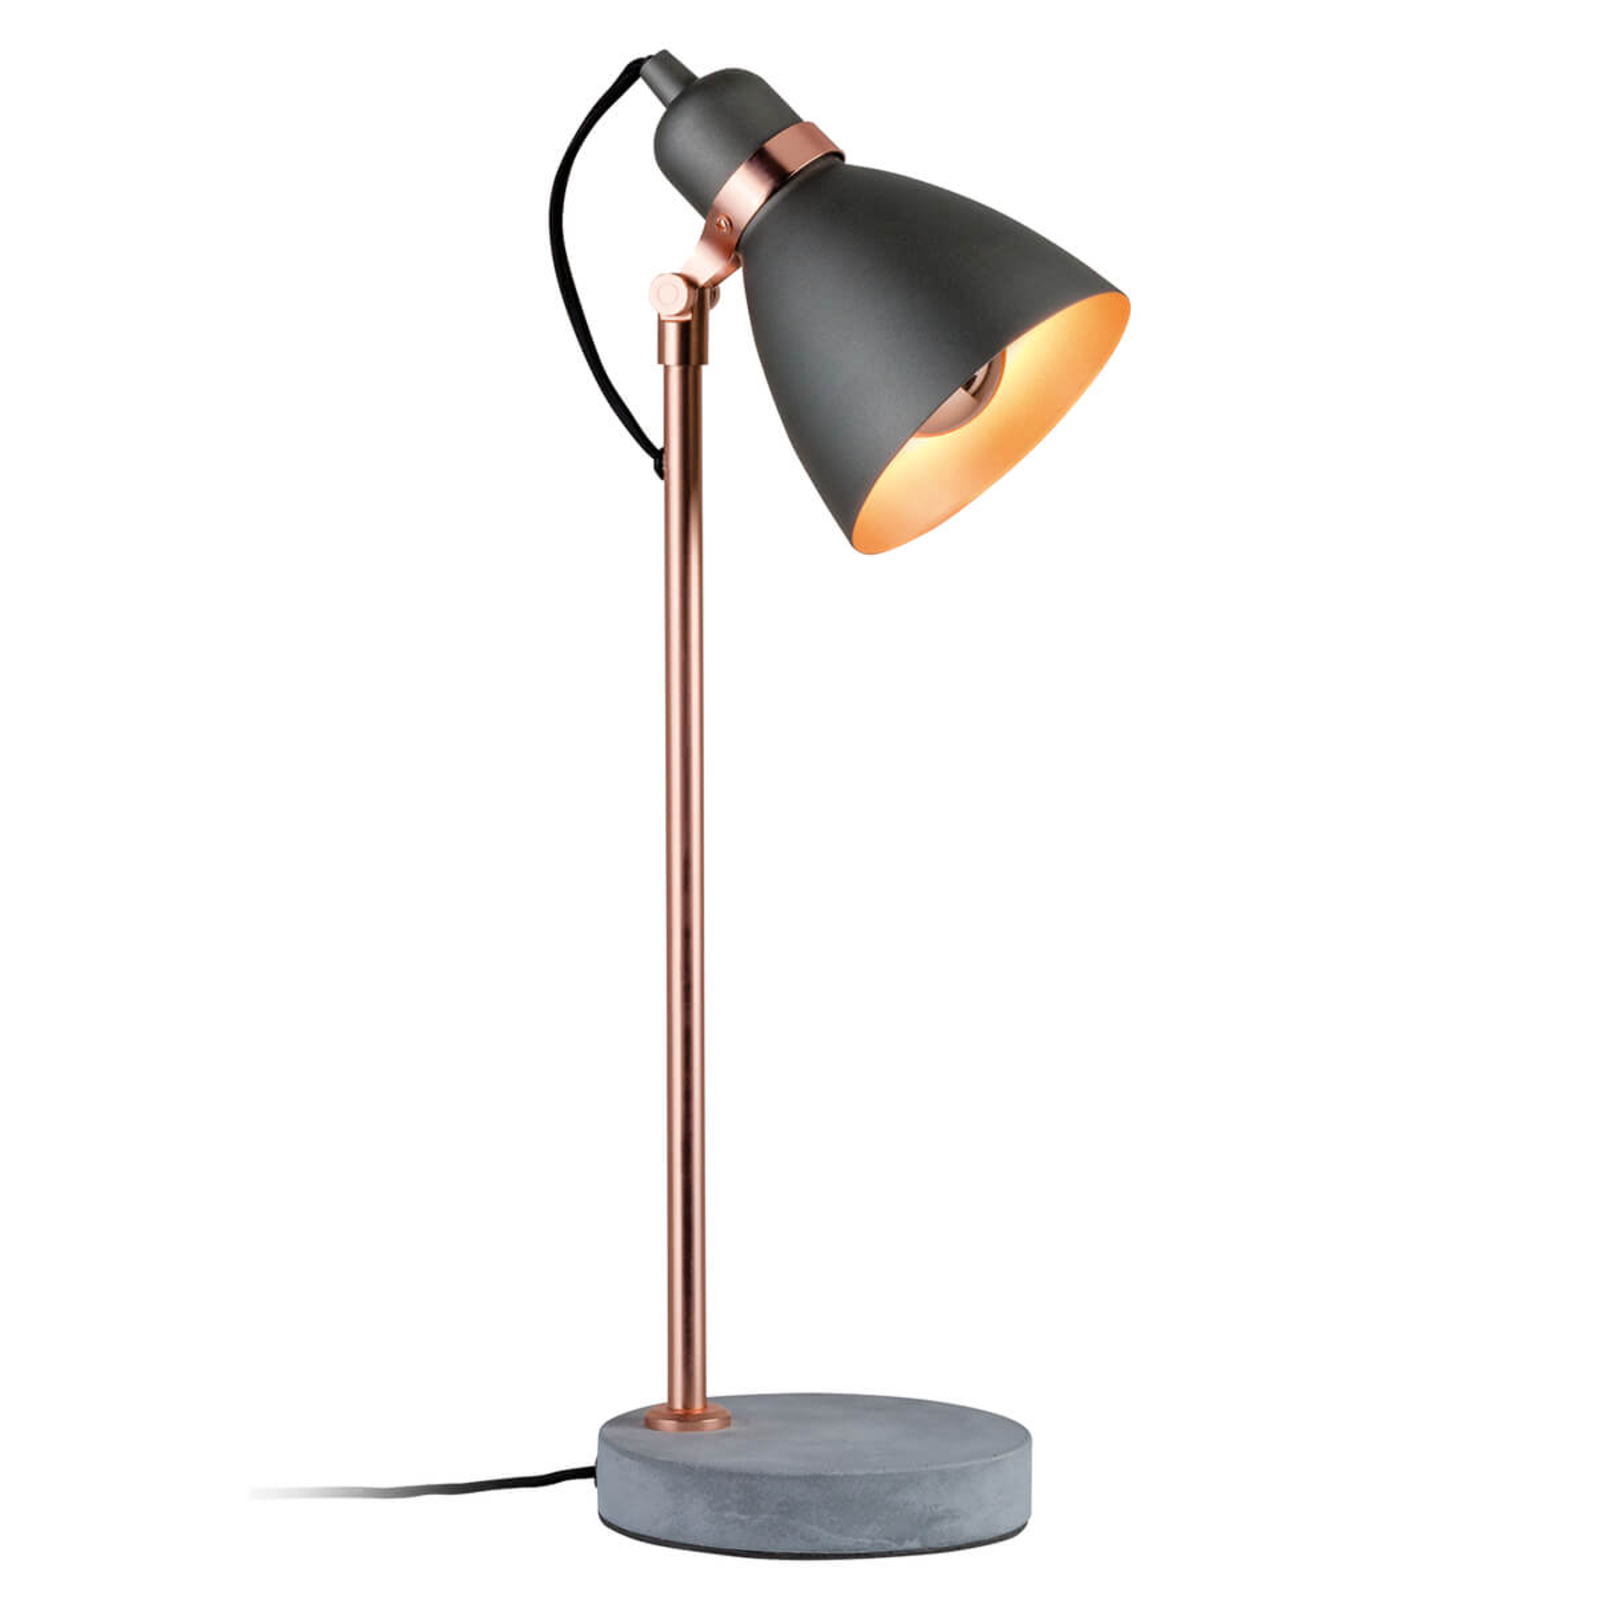 ik ben trots crisis Volwassen Moderne tafellamp Orm met betonnen voet | Lampen24.nl